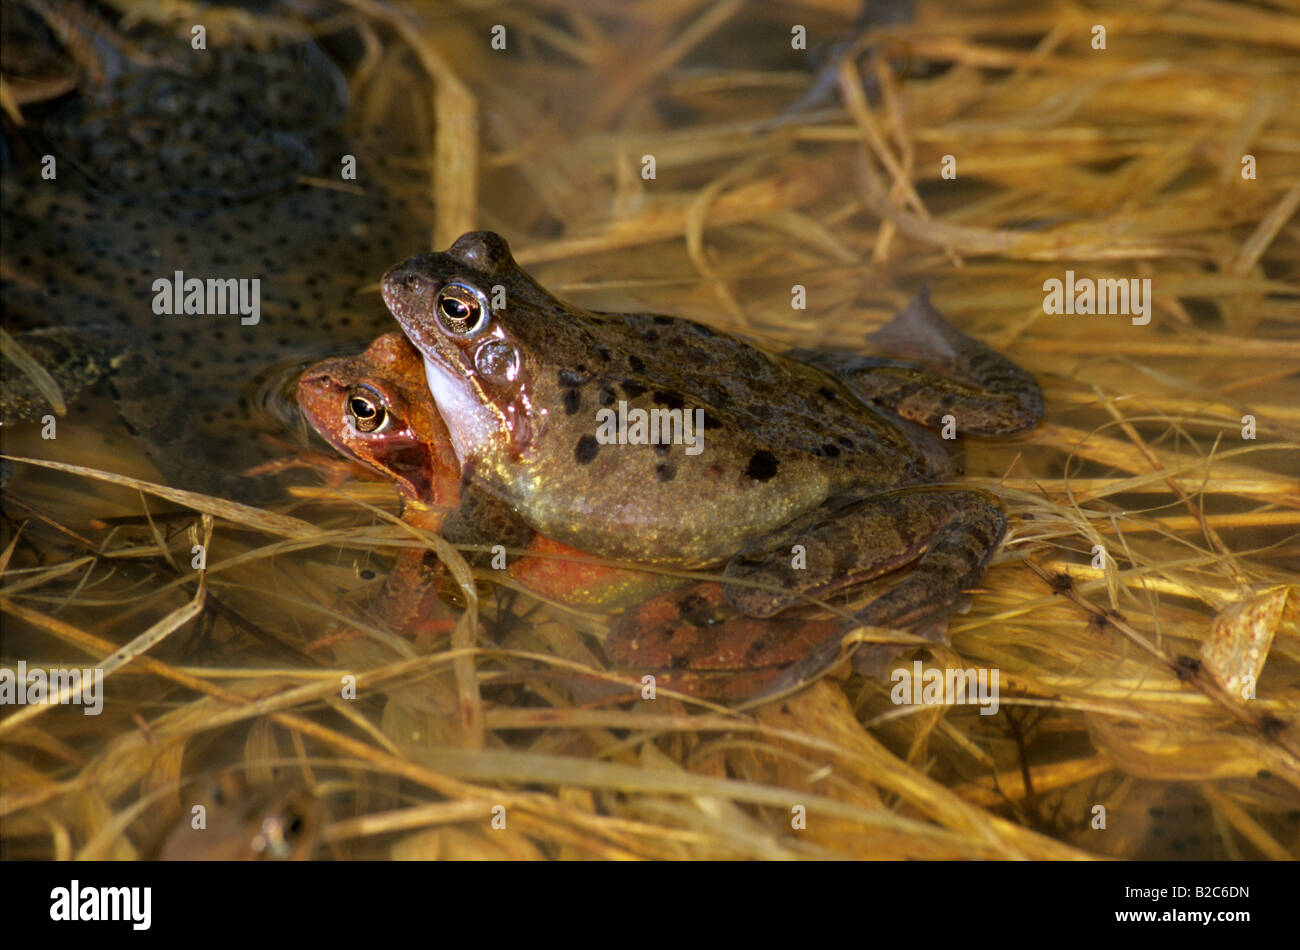 Grenouille rousse ou European Common Frog (Rana temporaria), de la famille des Ranidae, couple de frai Banque D'Images